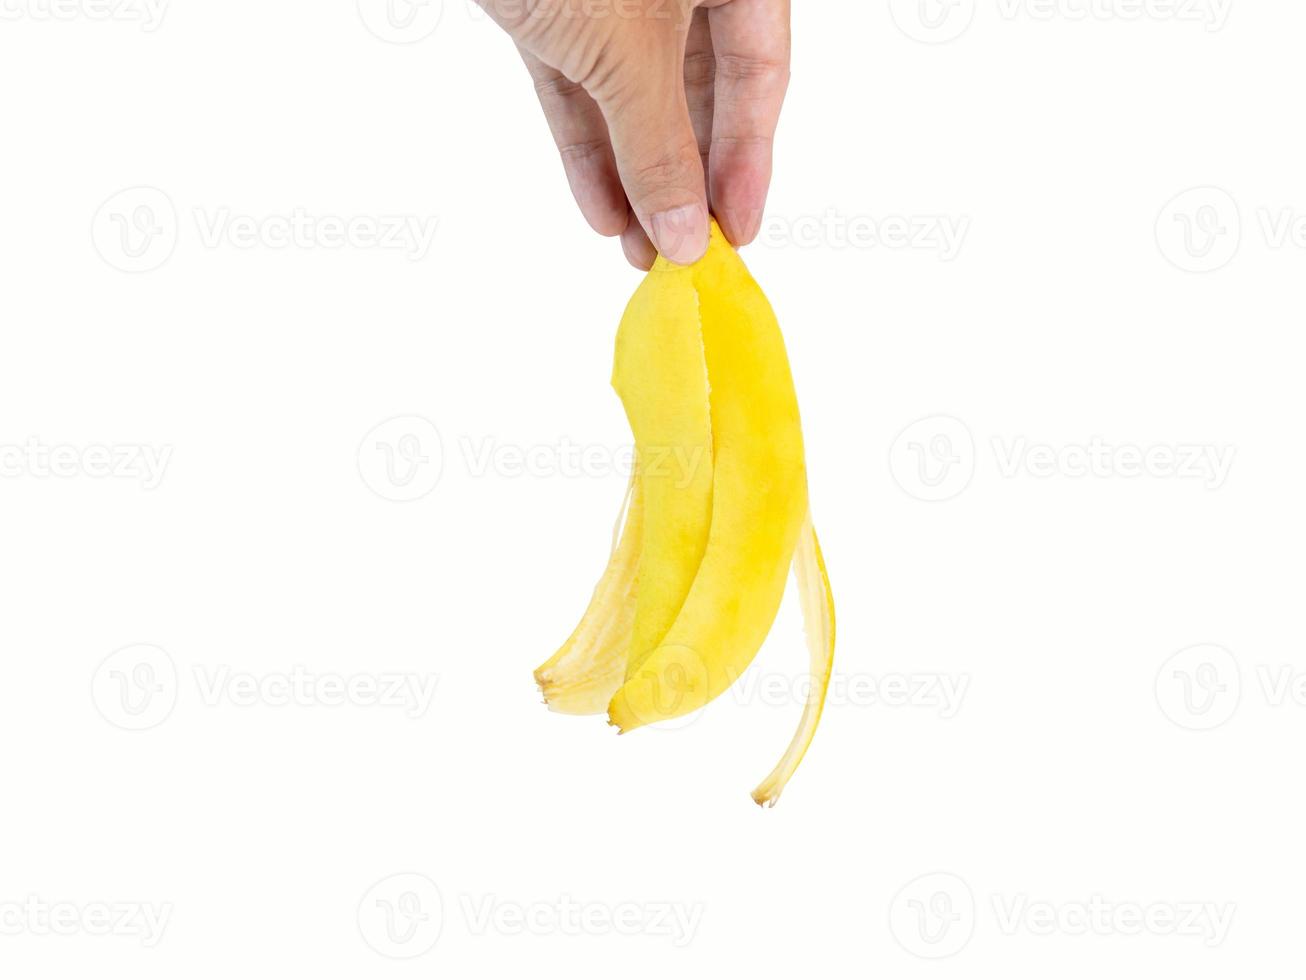 mano que sostiene una cáscara de plátano, una fruta de color amarillo dorado que se ha comido hasta el final, dejando solo la cáscara. filmado en el estudio sobre un fondo blanco con trazados de recorte y espacio de copia aislado. foto